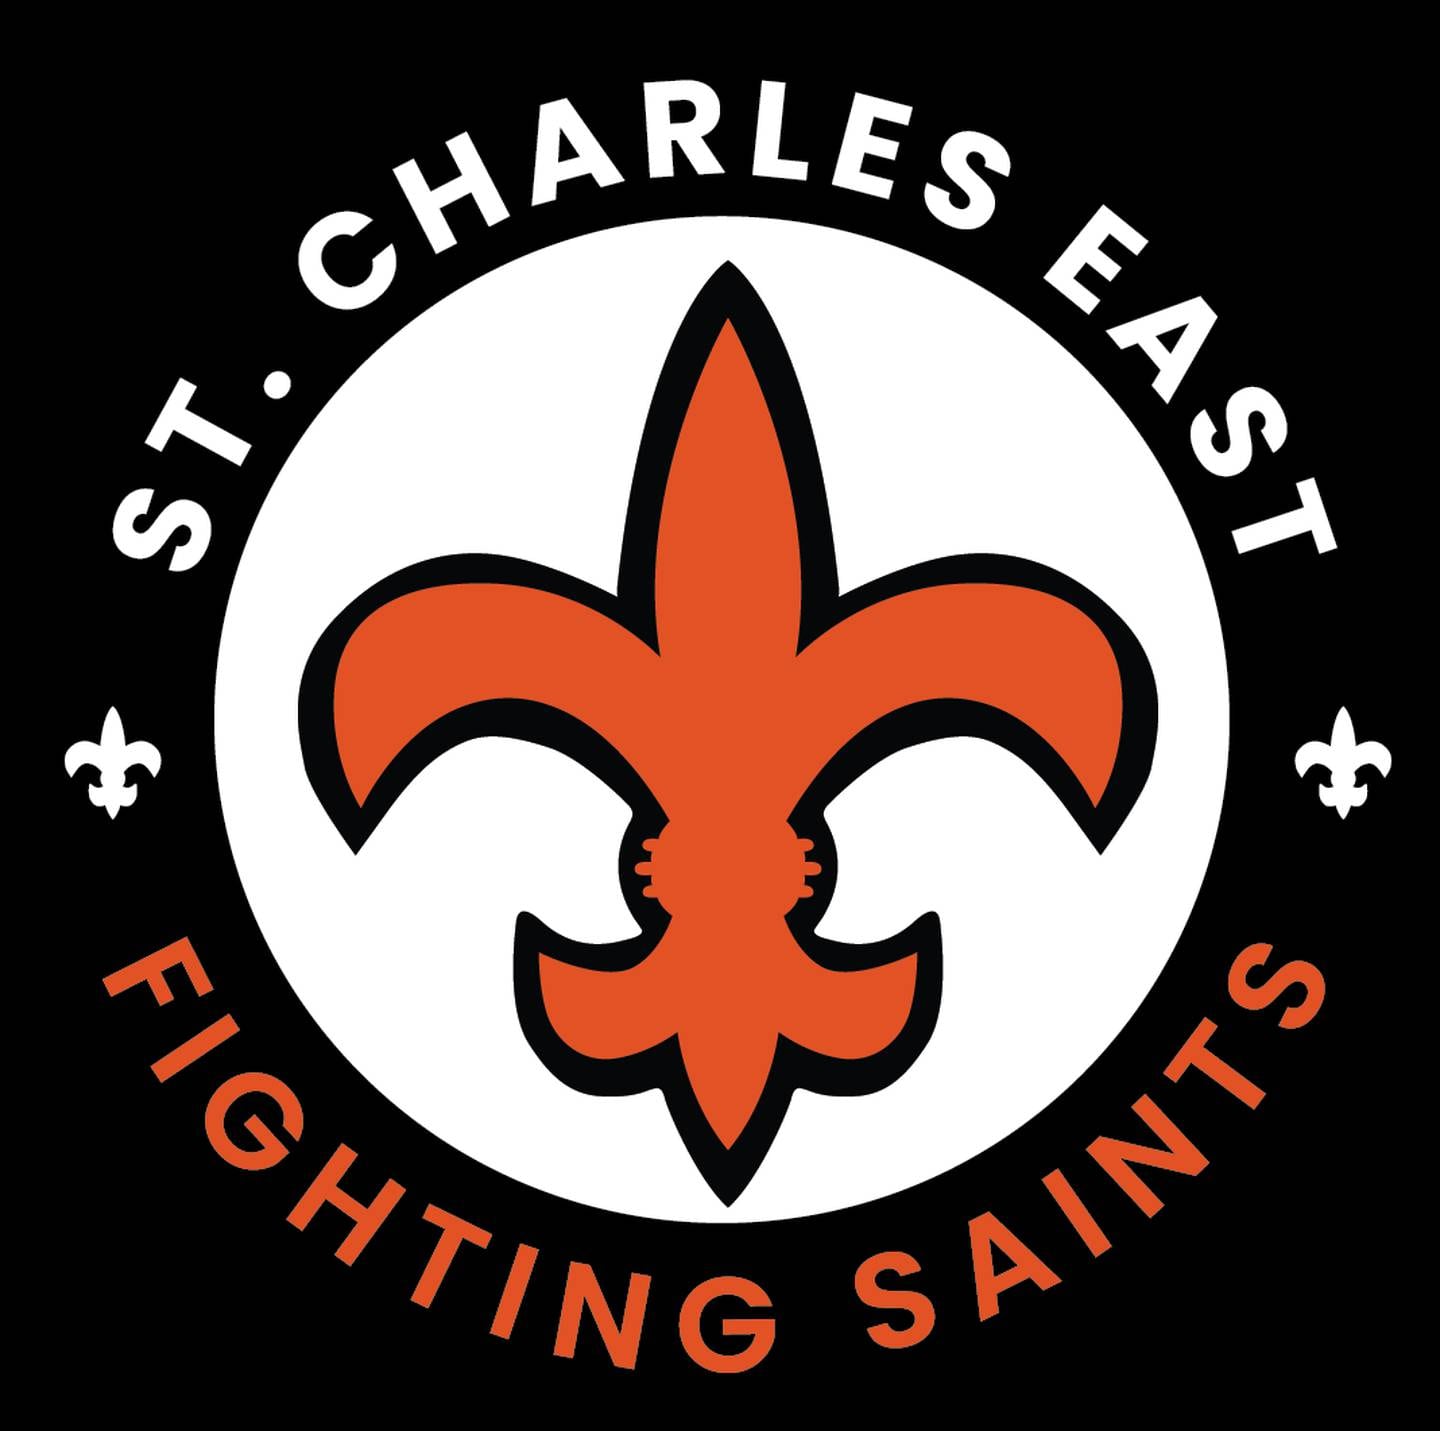 St. Charles East logo